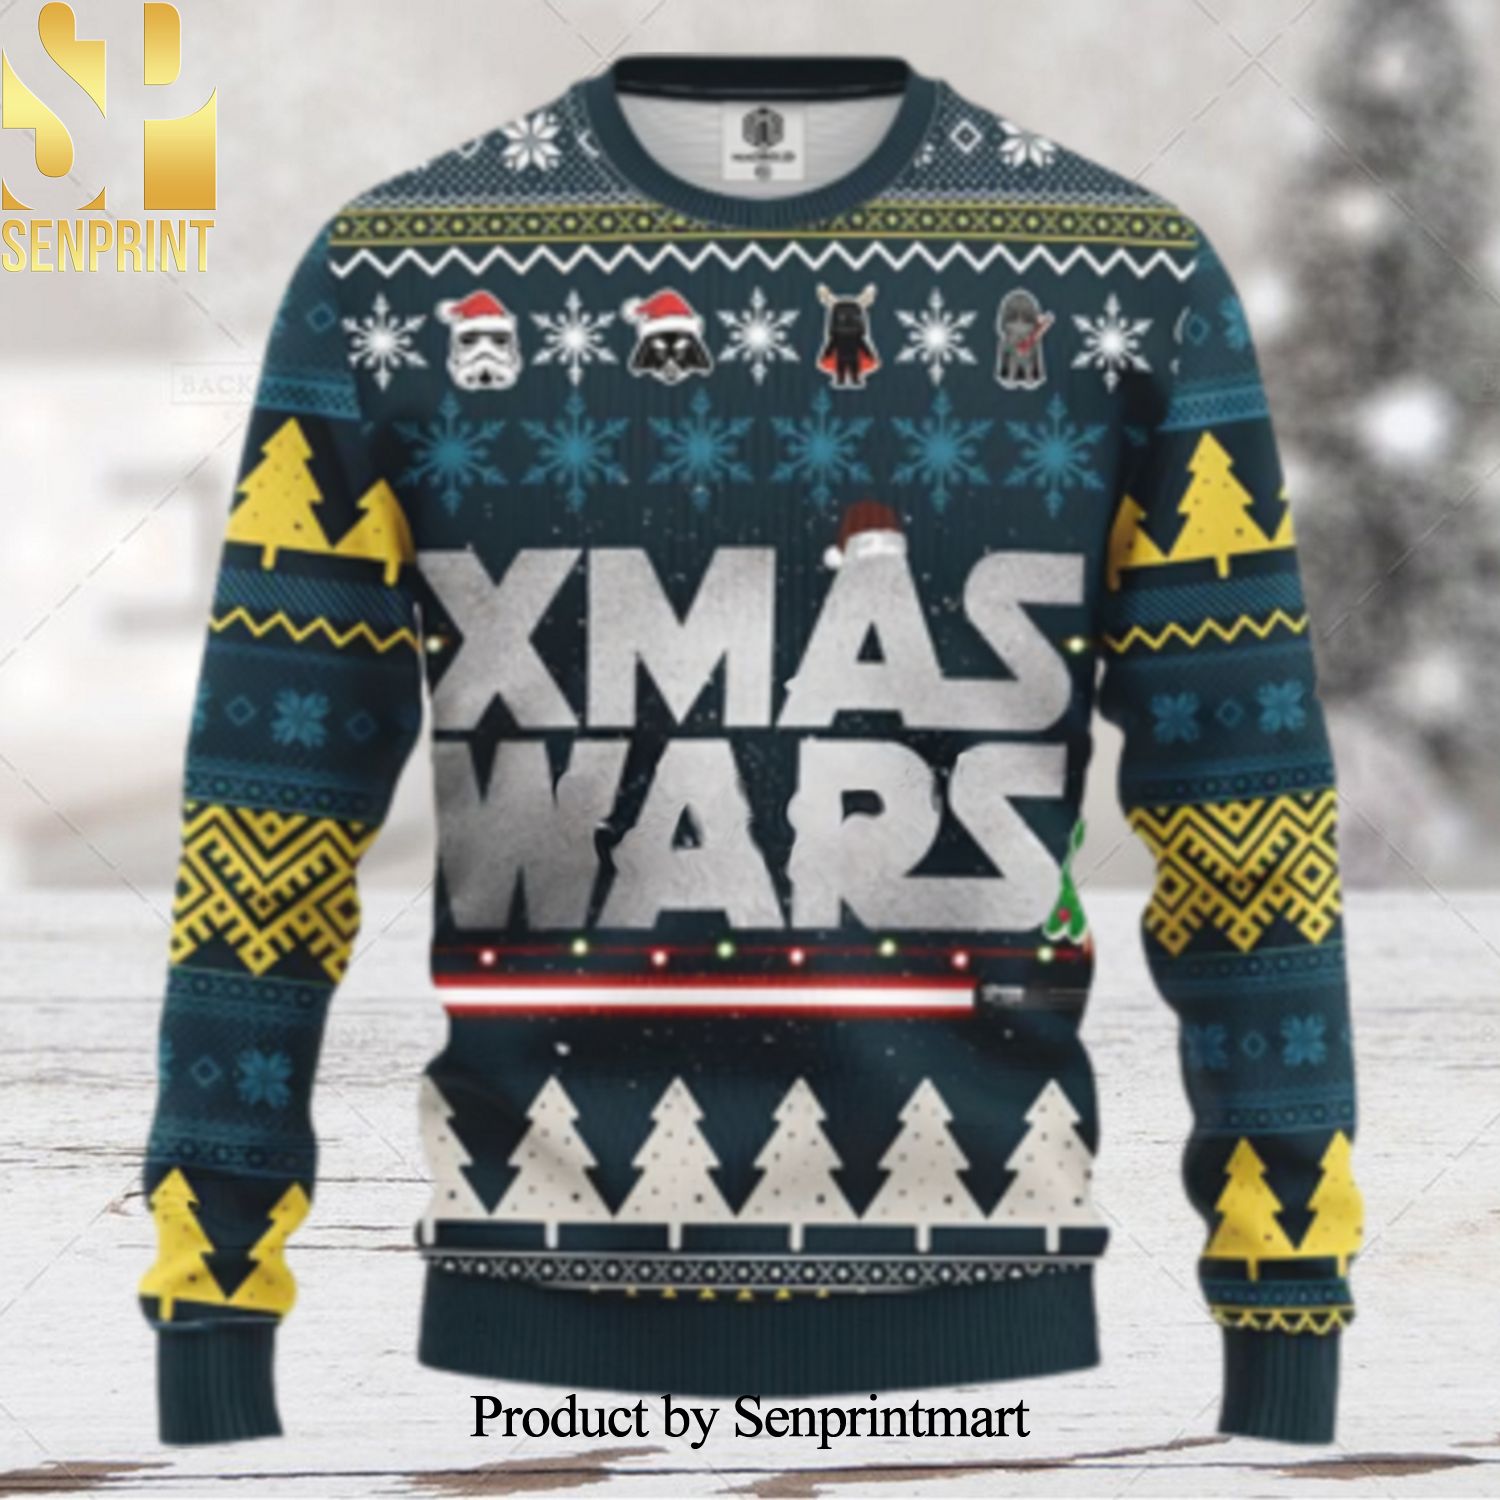 Star Wars Xmas Gifts Xmas Wars Ugly Christmas Sweater